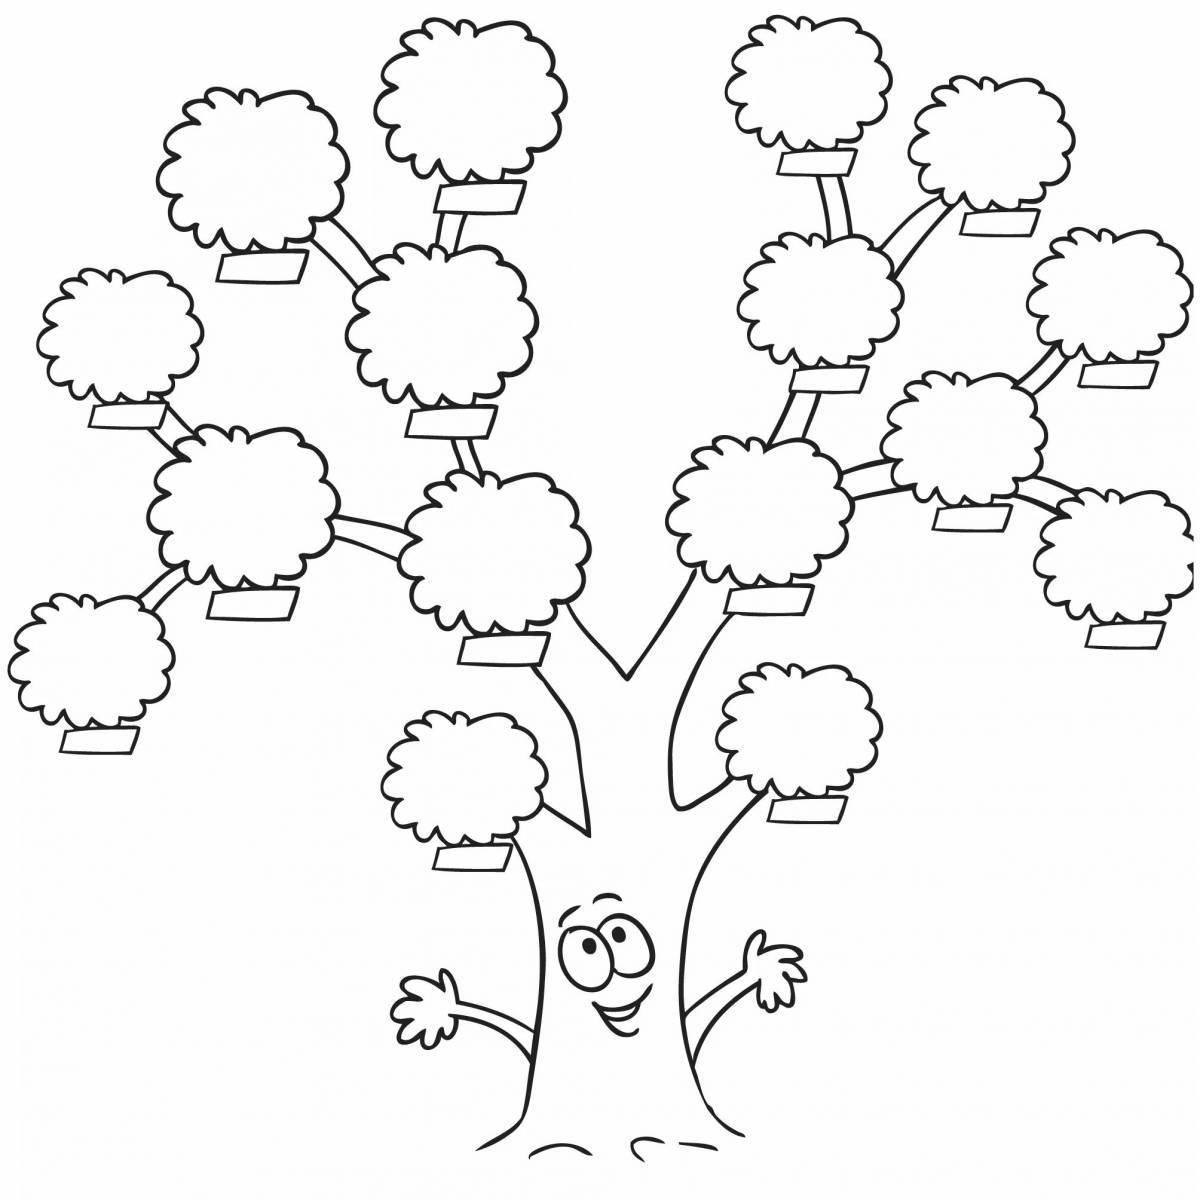 Генеалогическое дерево. Шаблон | Генеалогическое древо, Семейное дерево, Семейное дерево шаблоны